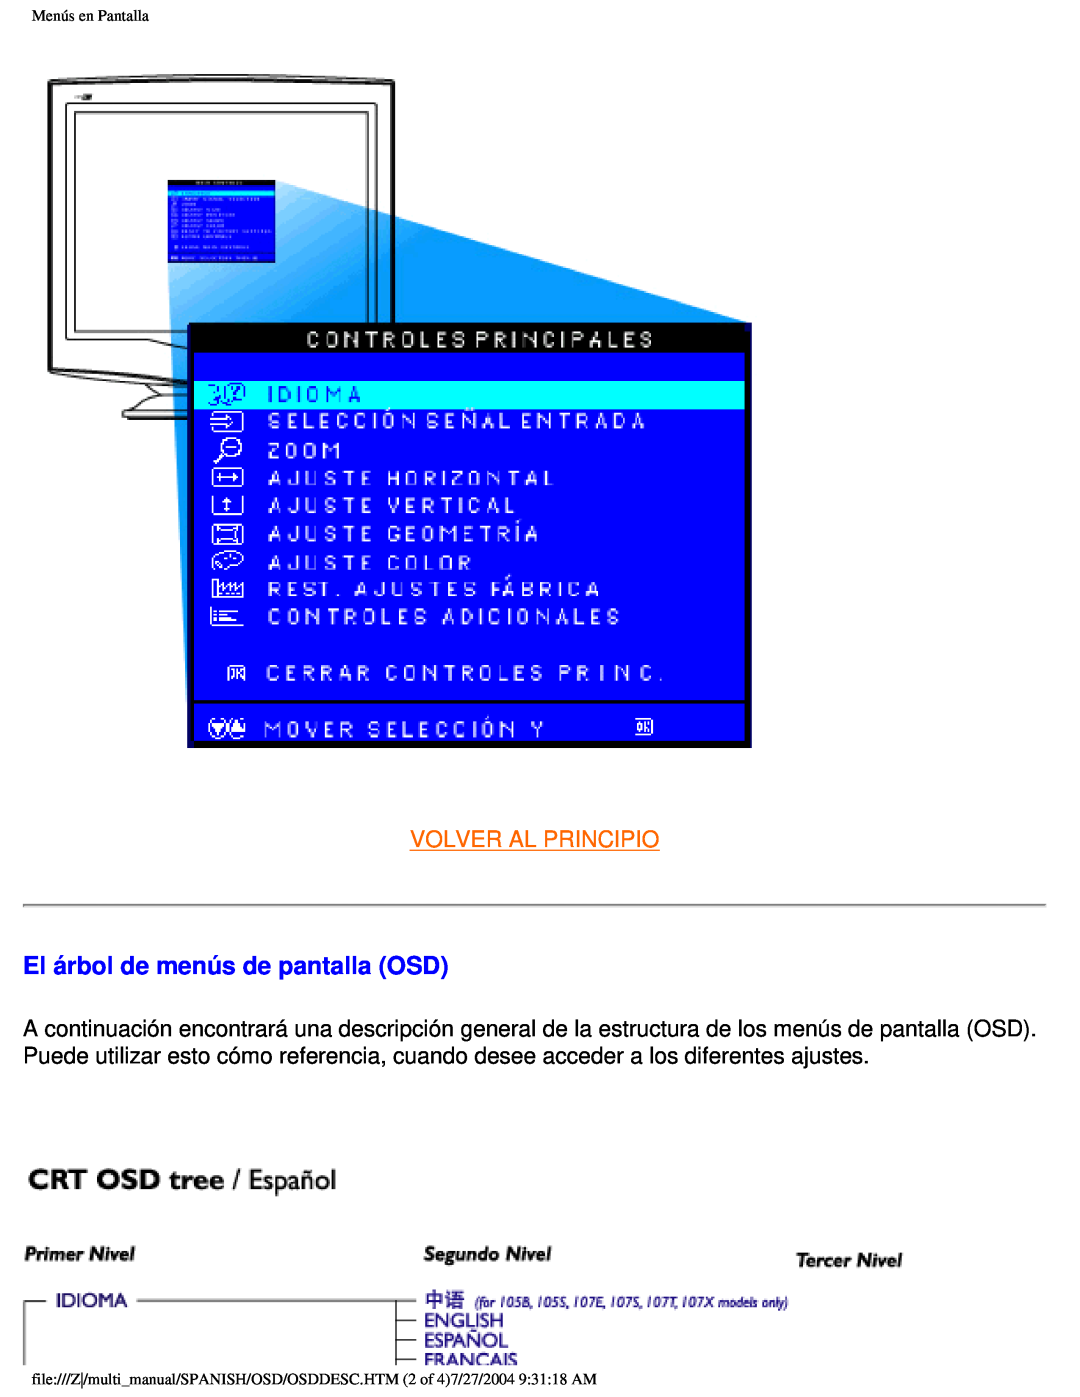 Philips 107B user manual El árbol de menús de pantalla OSD, Volver Al Principio, Menús en Pantalla 